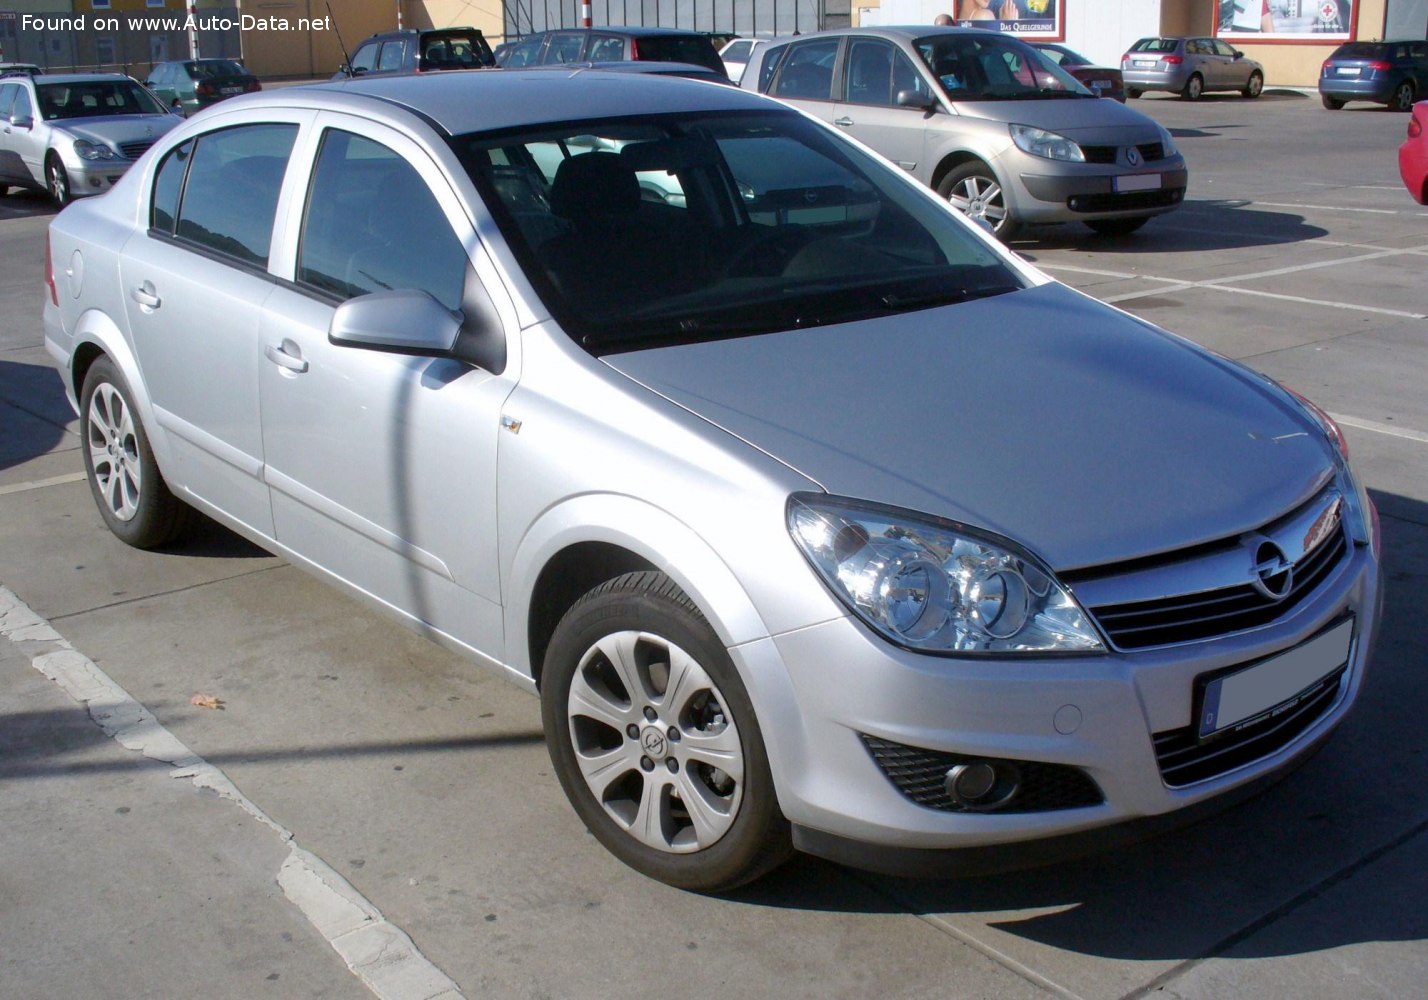 2007 Opel Astra H Sedan 1.6i 16V (115 Hp)  Technical specs, data, fuel  consumption, Dimensions